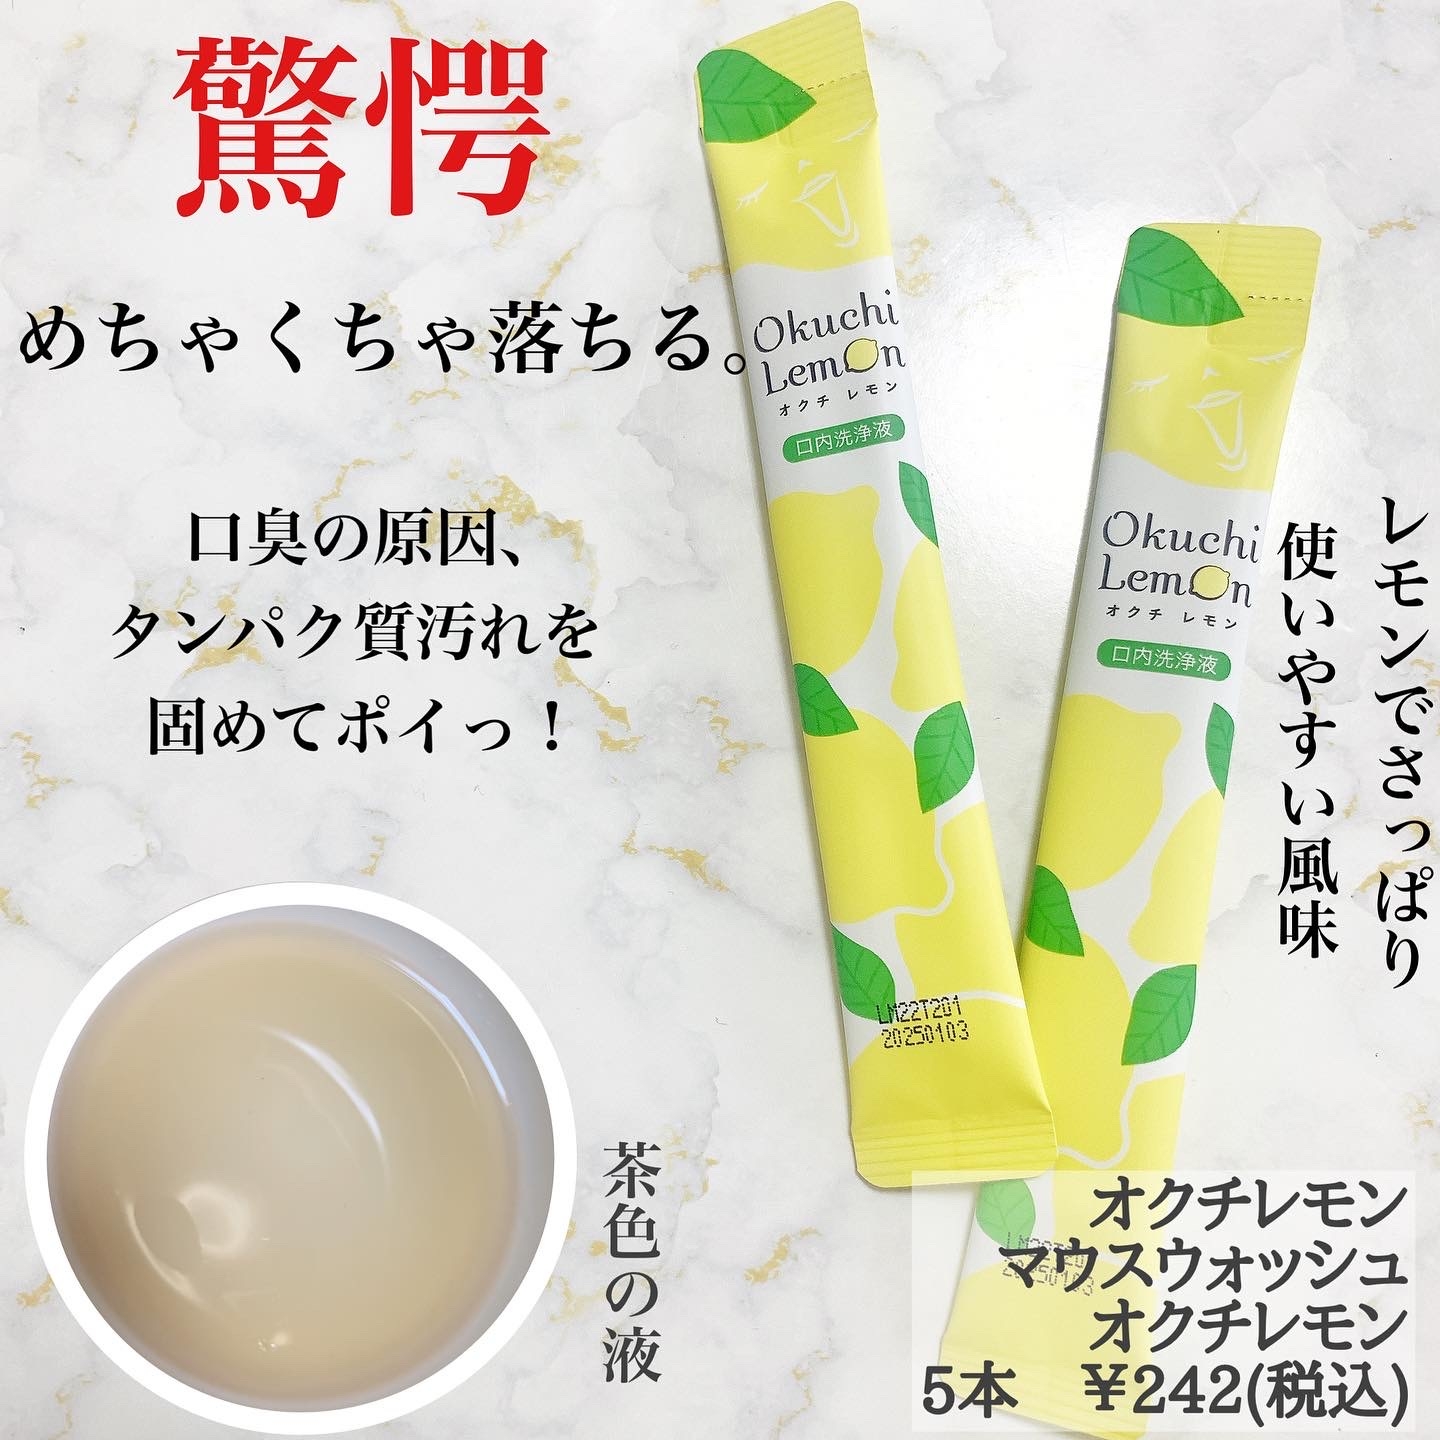 Bitatto-Japan(ビタットジャパン) オクチレモンの良い点・メリットに関するまみやこさんの口コミ画像2